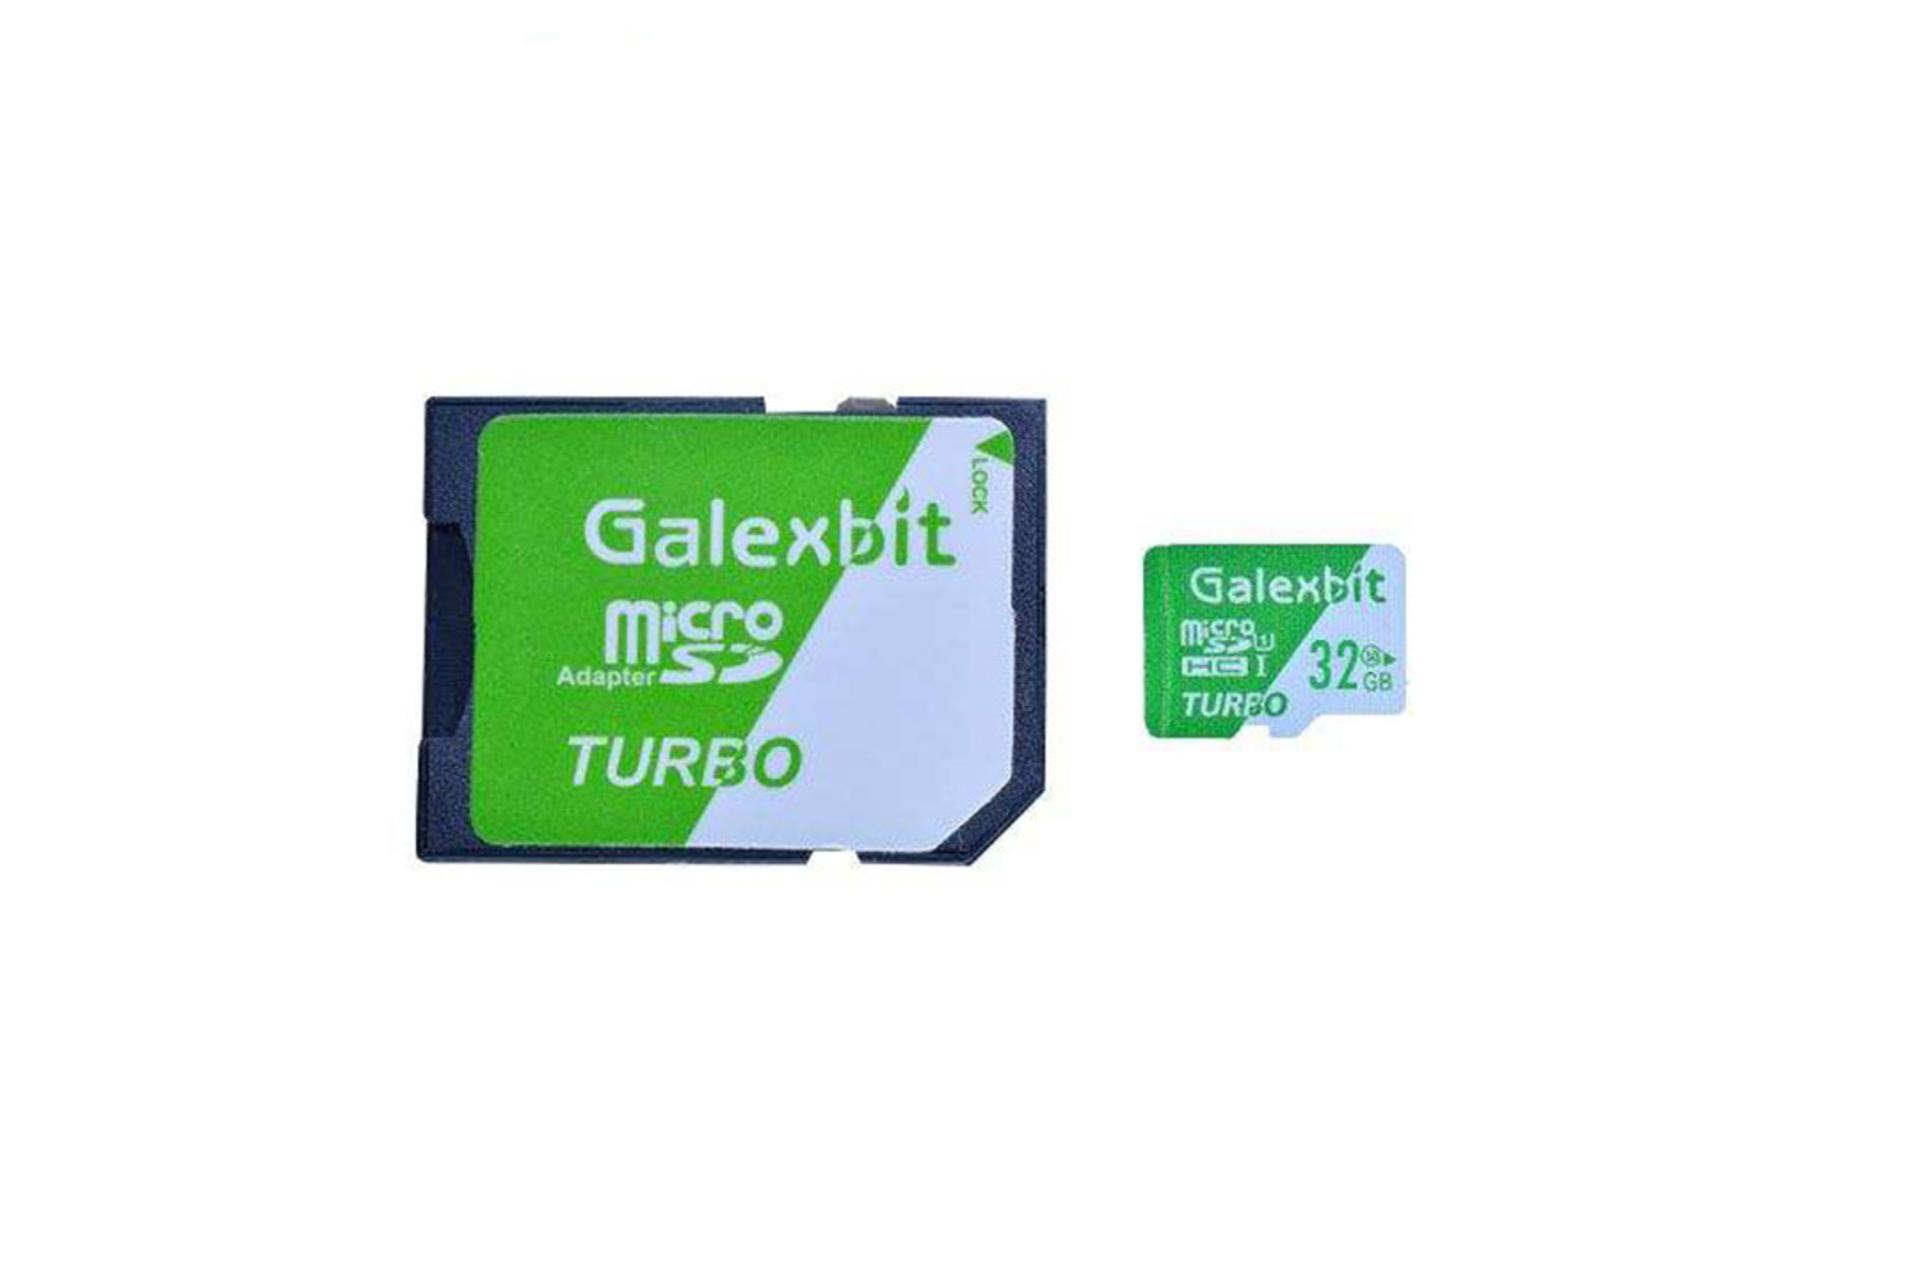 Galaxbit Turbo microSDHC Class 10 UHS-I U1 32GB